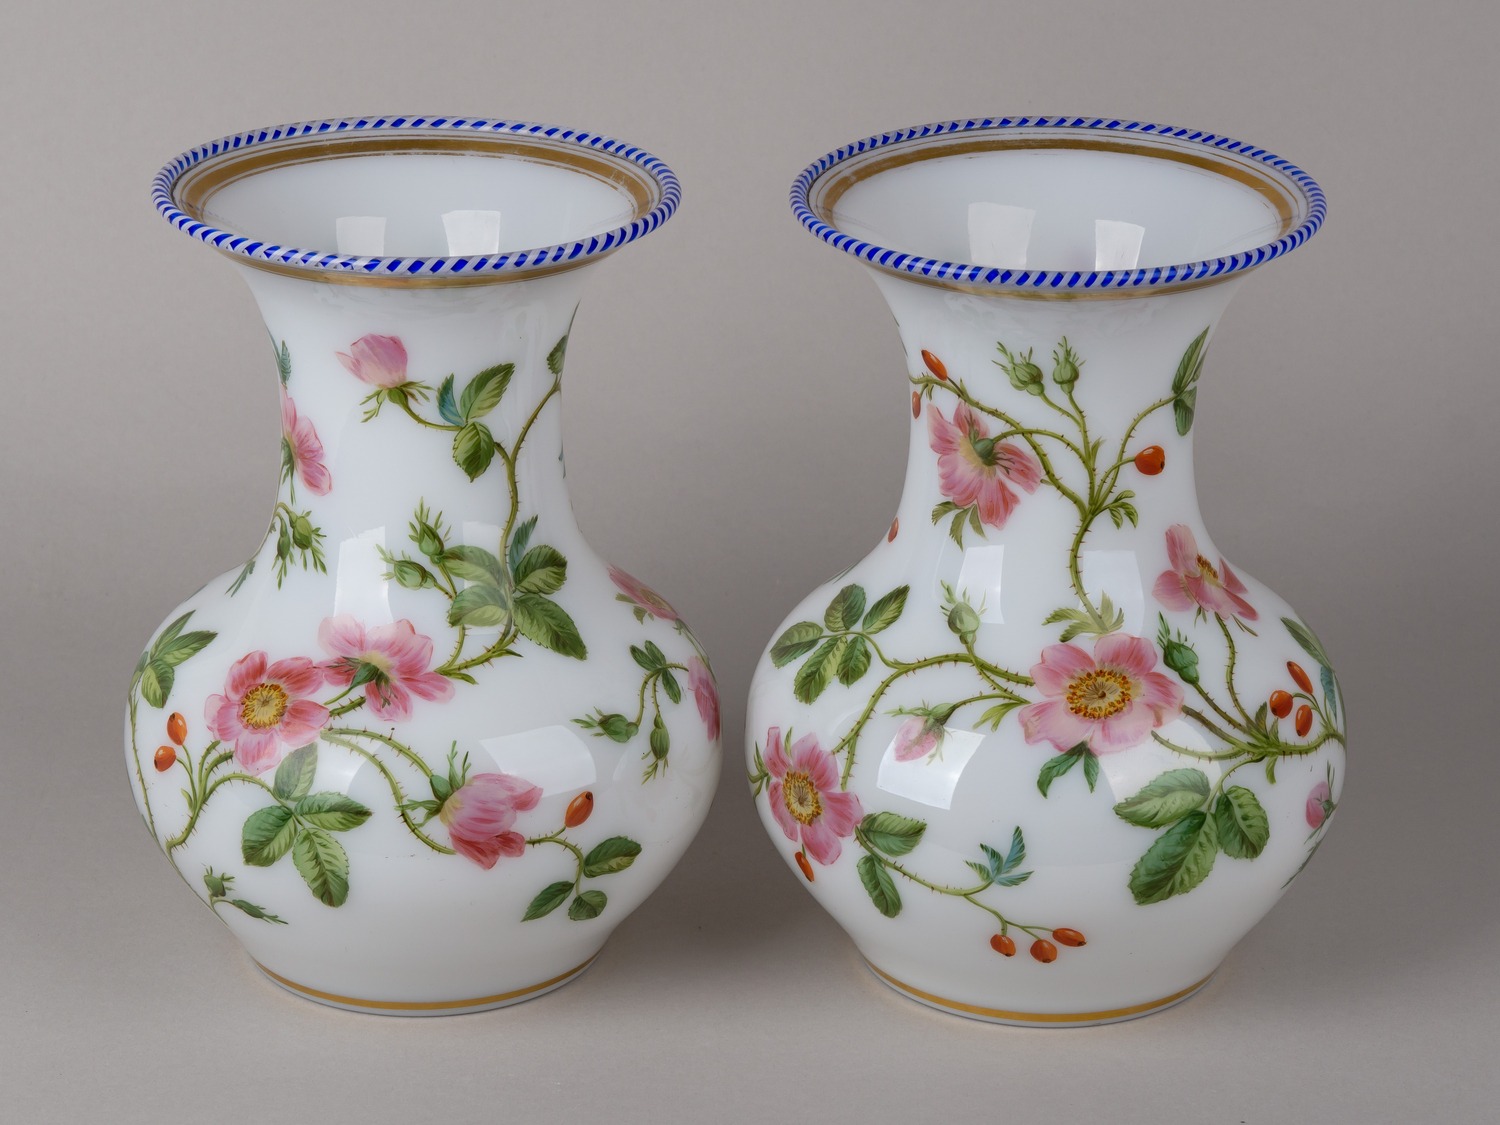 Парные вазы с эмалями «Дикая роза».<br>Франция, фирма Baccarat, мастерская Jean-Francois Robert, начало 1840-х годов.